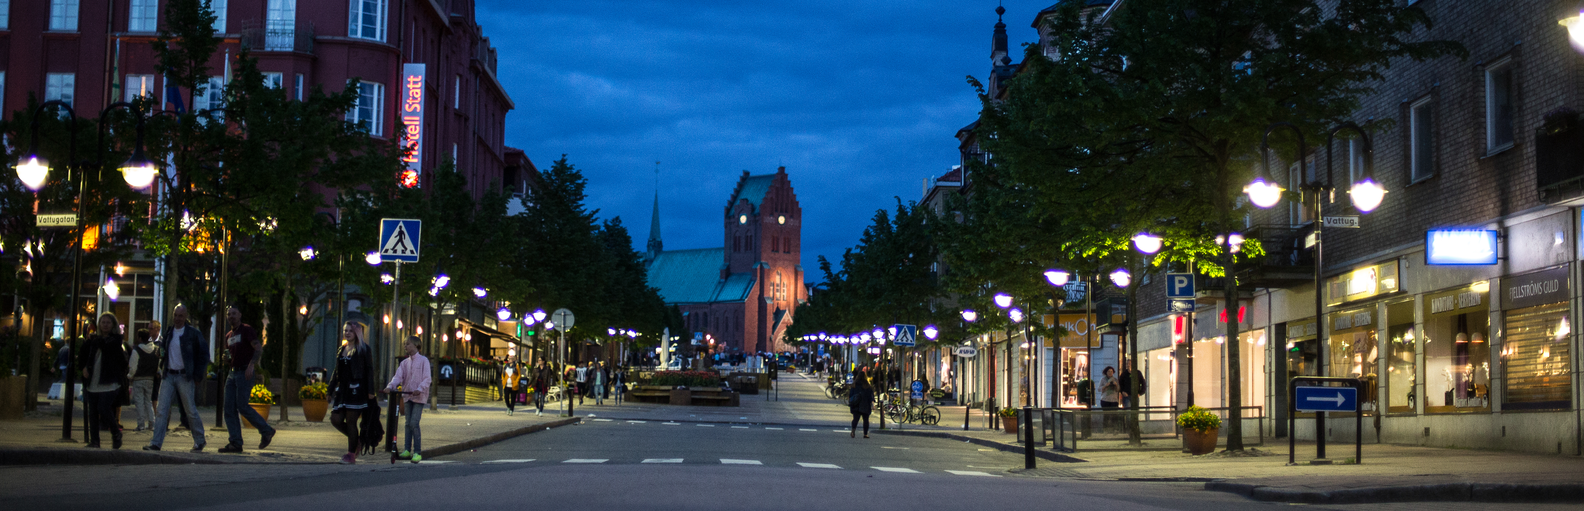 Hässleholms centrum en sommarkväll. Människor är ute och går, cyklar.